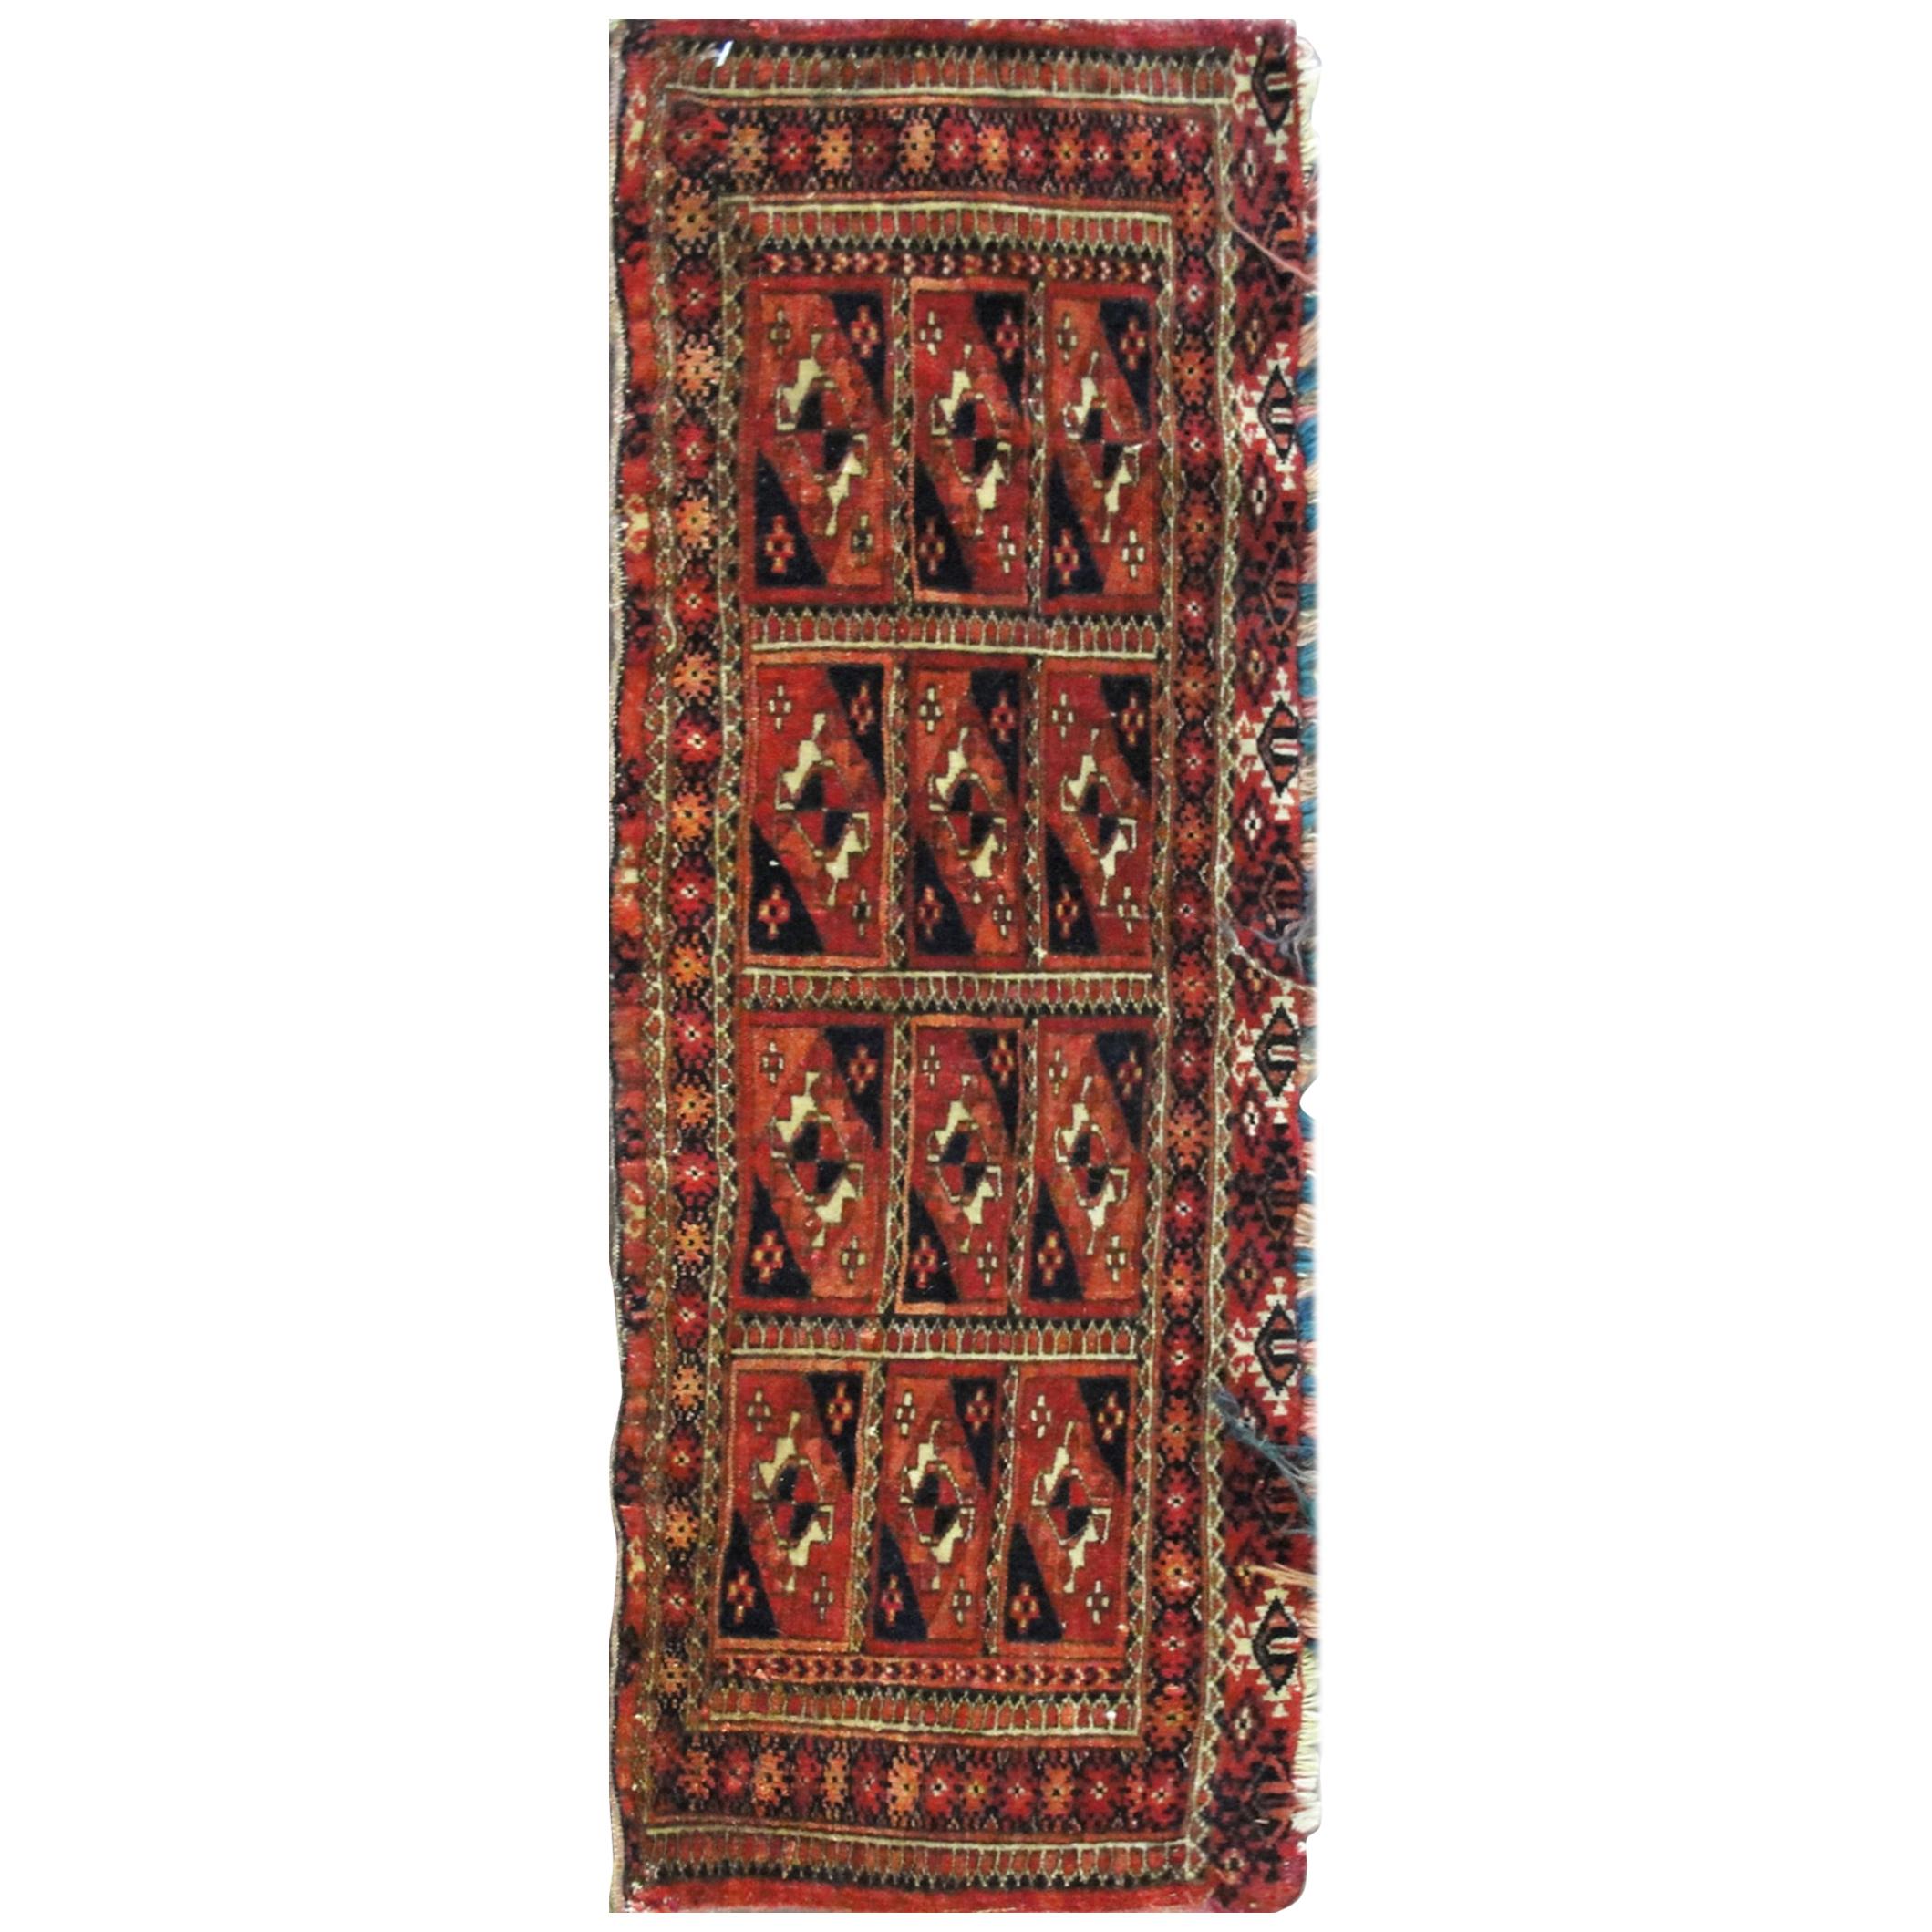  Antique Turkoman Torba Bag Face, Free Shipping en vente